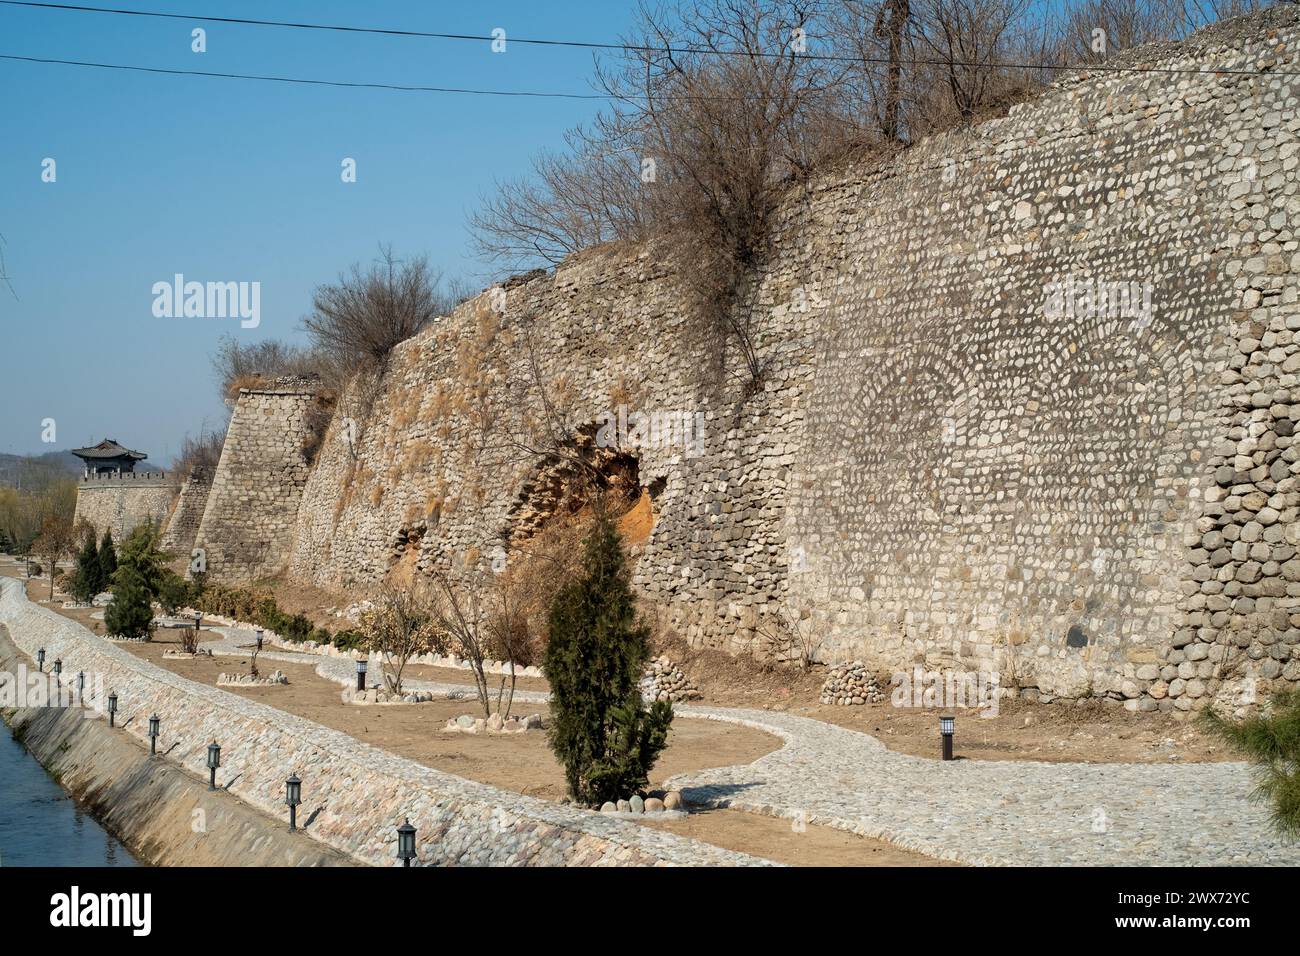 Die alte Stadtmauer von Jingxing, die sich im Jingxing County in der Provinz Hebei, China befindet, weist umfangreiche Verwendung von Kopfsteinpflaster für den Bau auf. Stockfoto